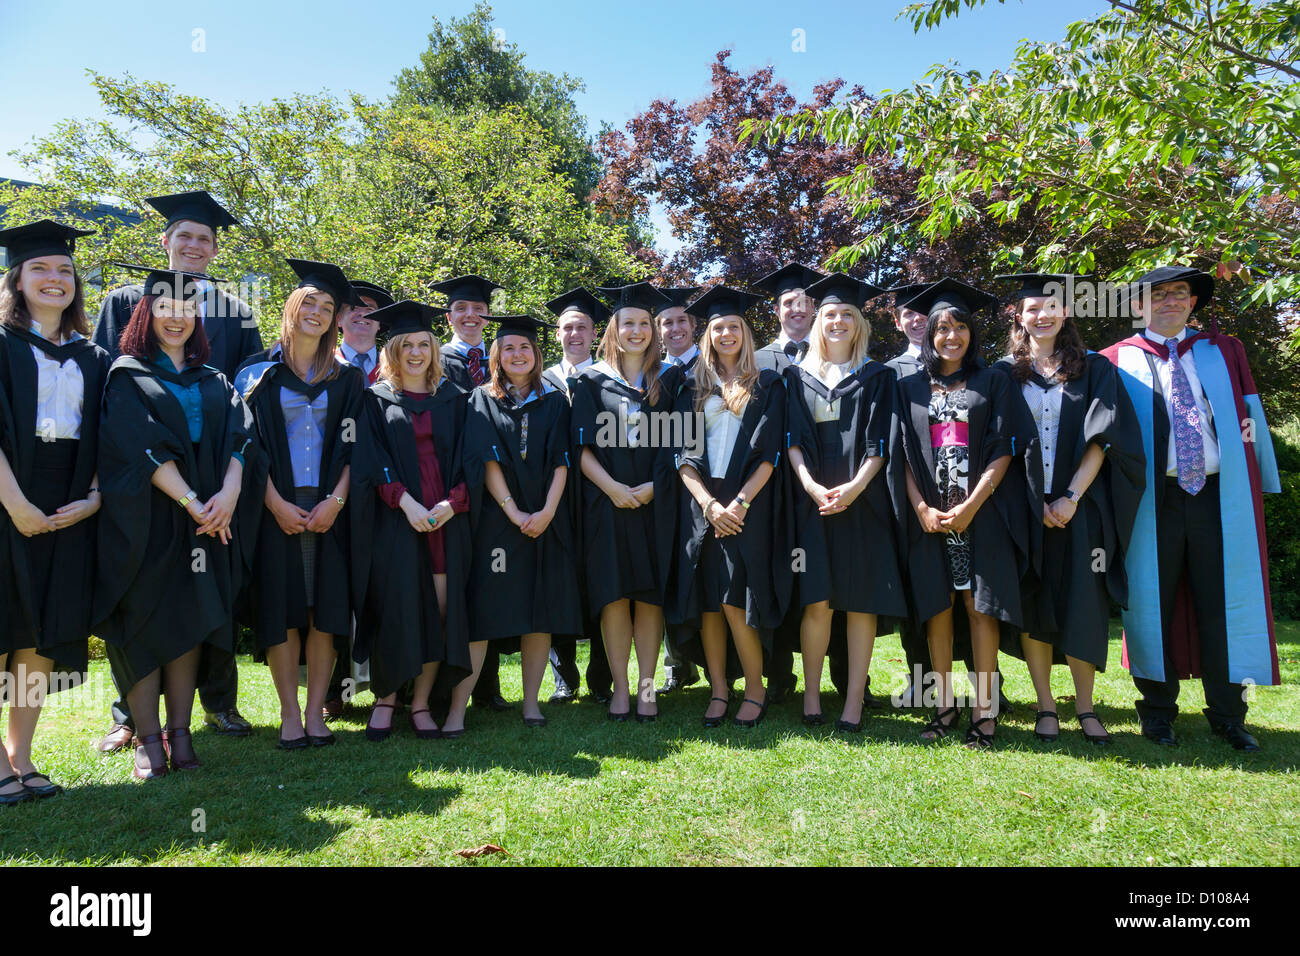 Les diplômés et leurs professeurs de l'École de génie de l'Université de Southampton, en Angleterre, se réunissent pour une photo de groupe. Banque D'Images